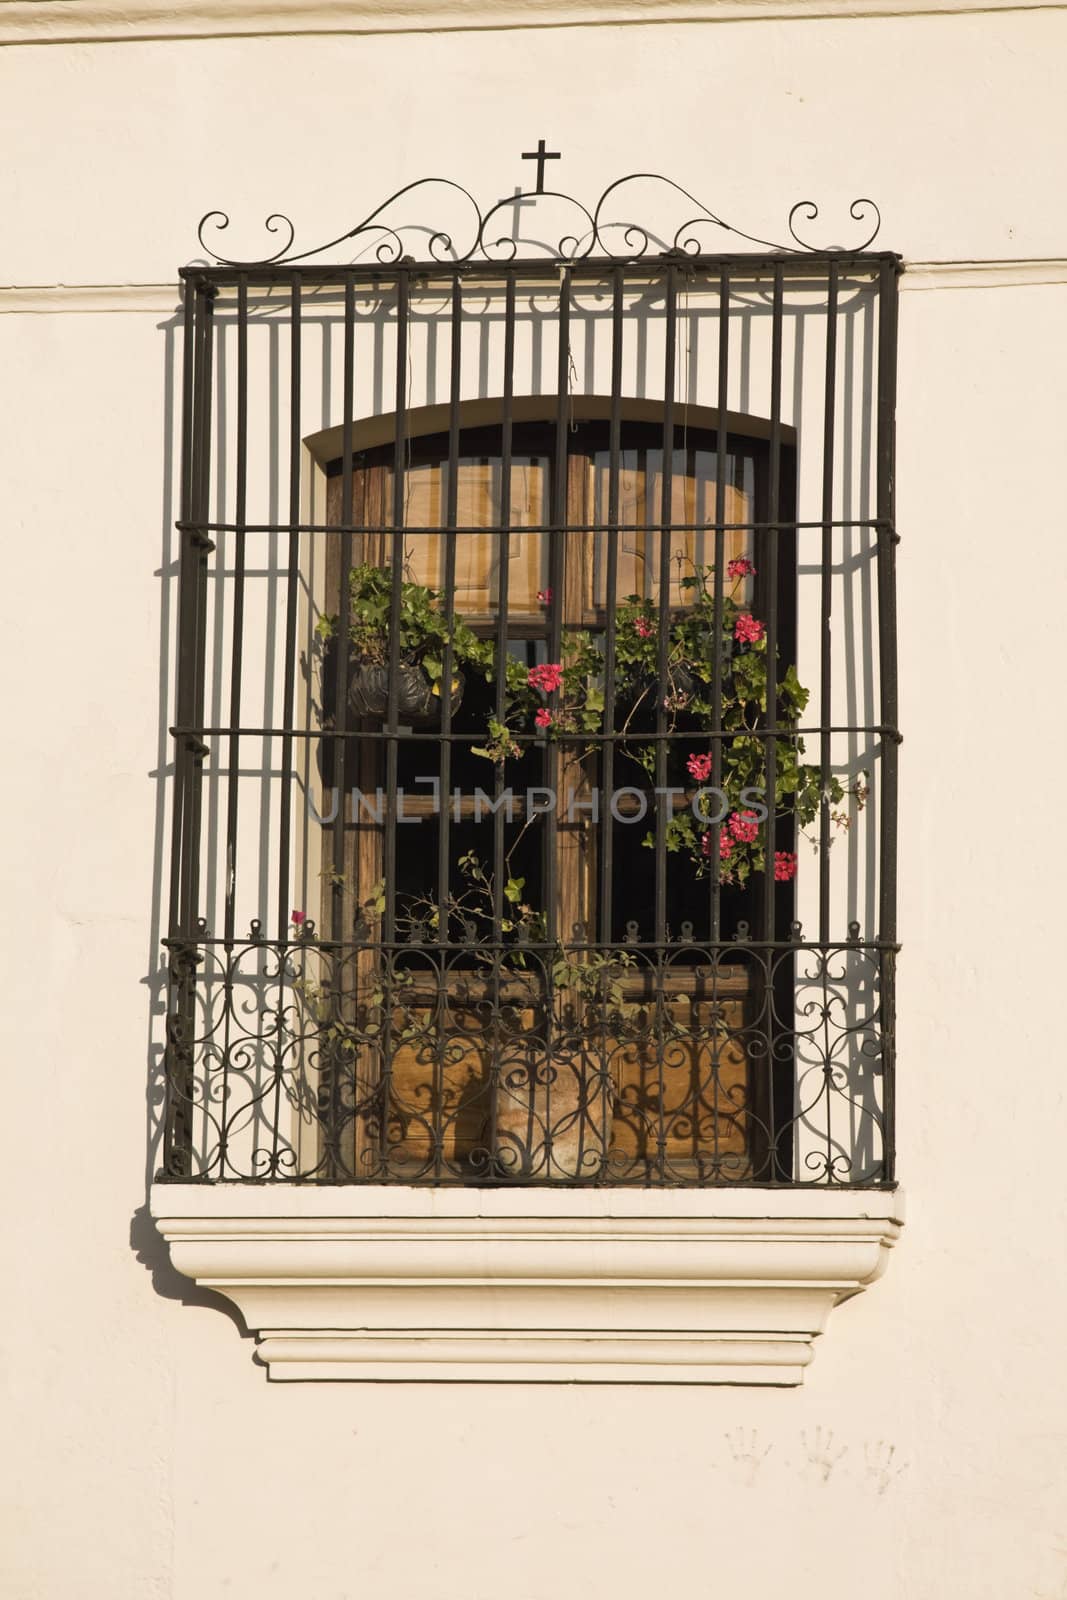 Window seen in Antigua, Guatemala
